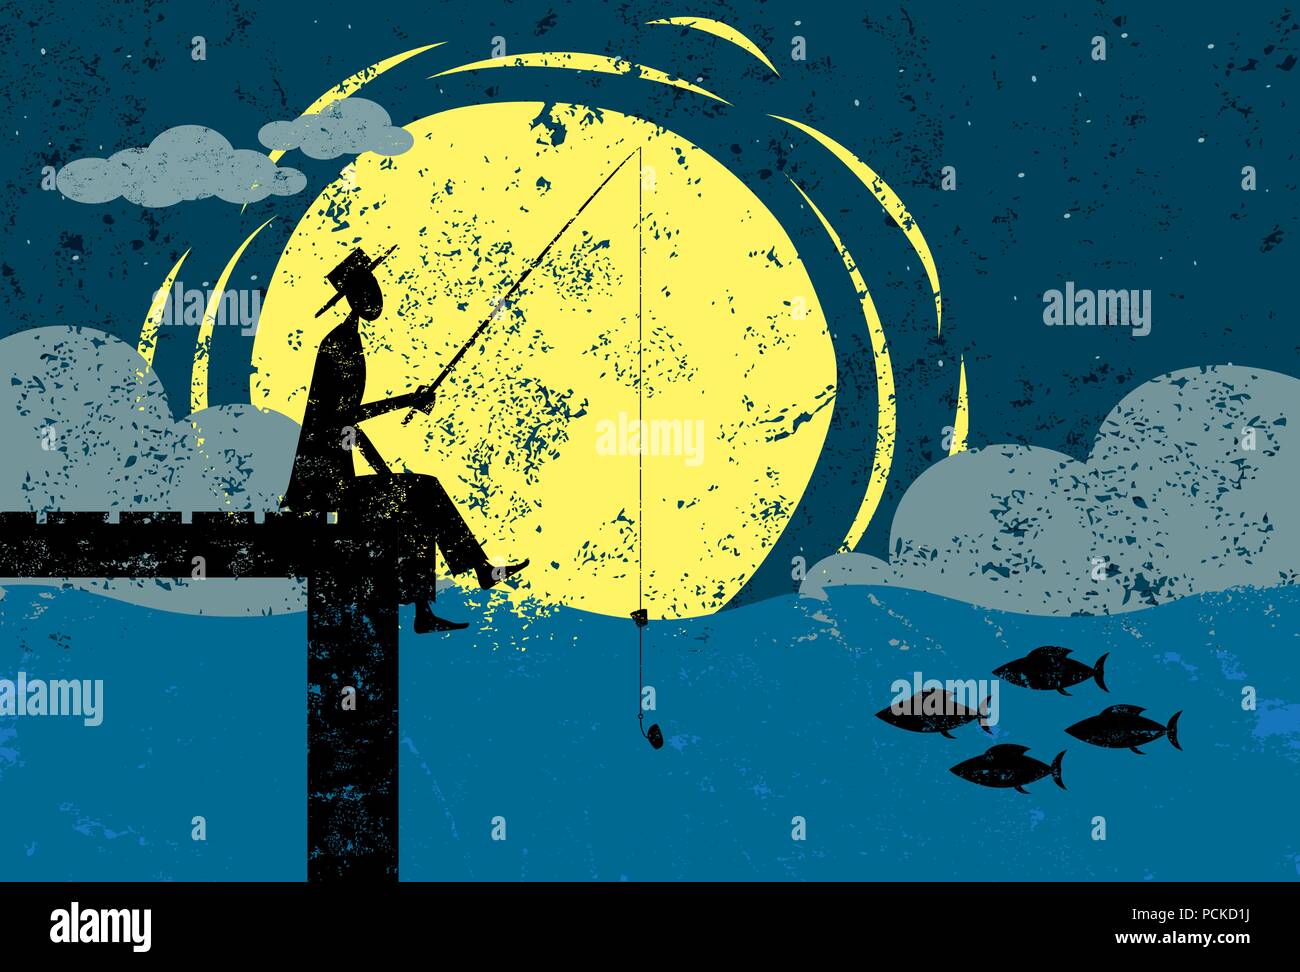 La pesca su una dock al chiaro di luna un uomo pesca sull'estremità di un molo al chiaro di luna. L'uomo, dock e pesce sono su un livello separato dallo sfondo Illustrazione Vettoriale